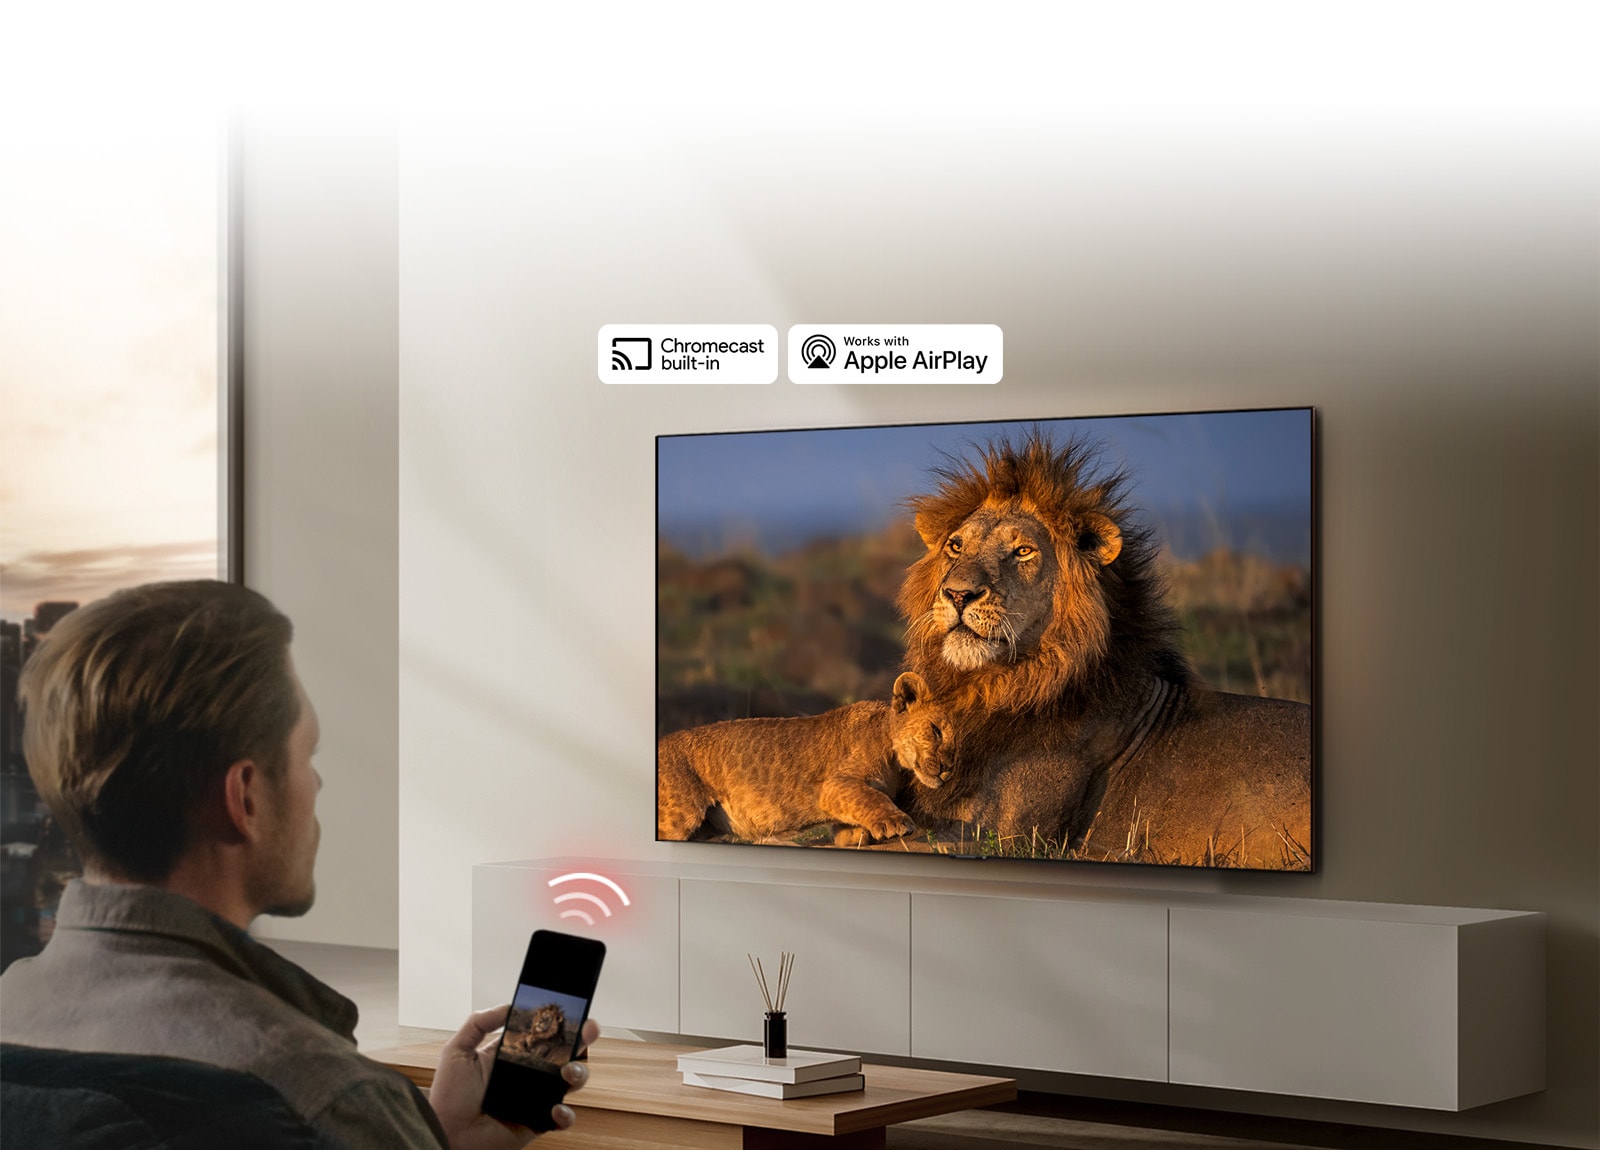 LG TV piestiprināts pie sienas dzīvojamajā istabā, parādot lauvu un lauvēvu. Vīrietis sēž priekšplānā ar viedtālruni rokās, skatot šo pašu attēlu ar lauvām. Trīs neona sarkanu ieliektu joslu grafika parādīta tieši virs viedtālruņa, mērķējot tieši TV.